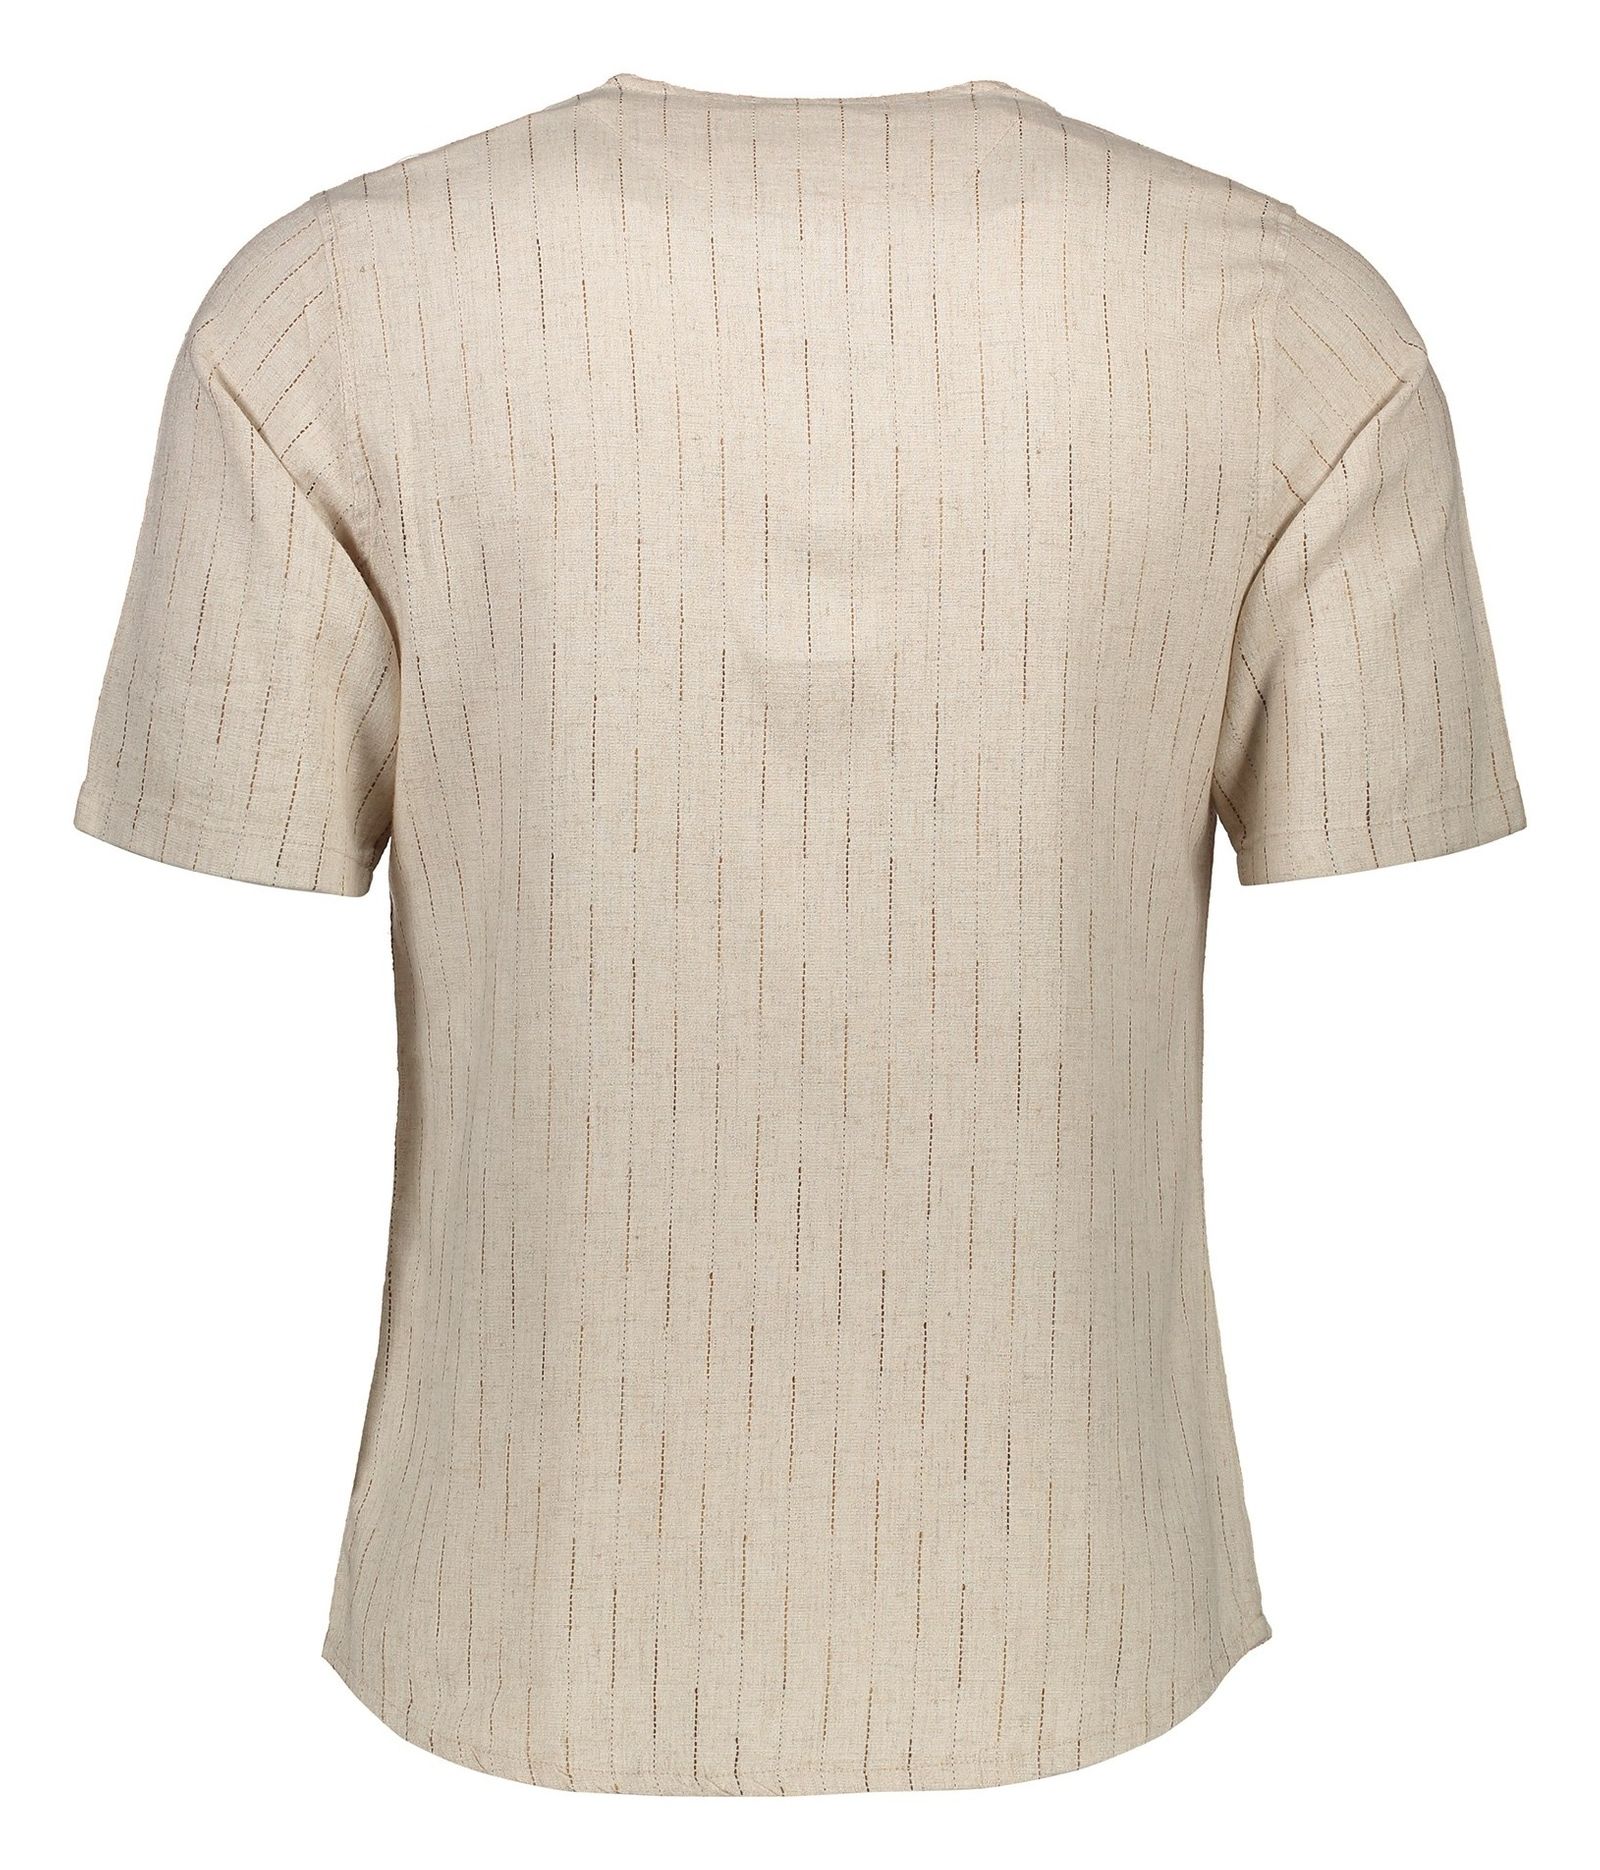 پیراهن آستین کوتاه مردانه مدل طبری - تن درست - کرم - 3